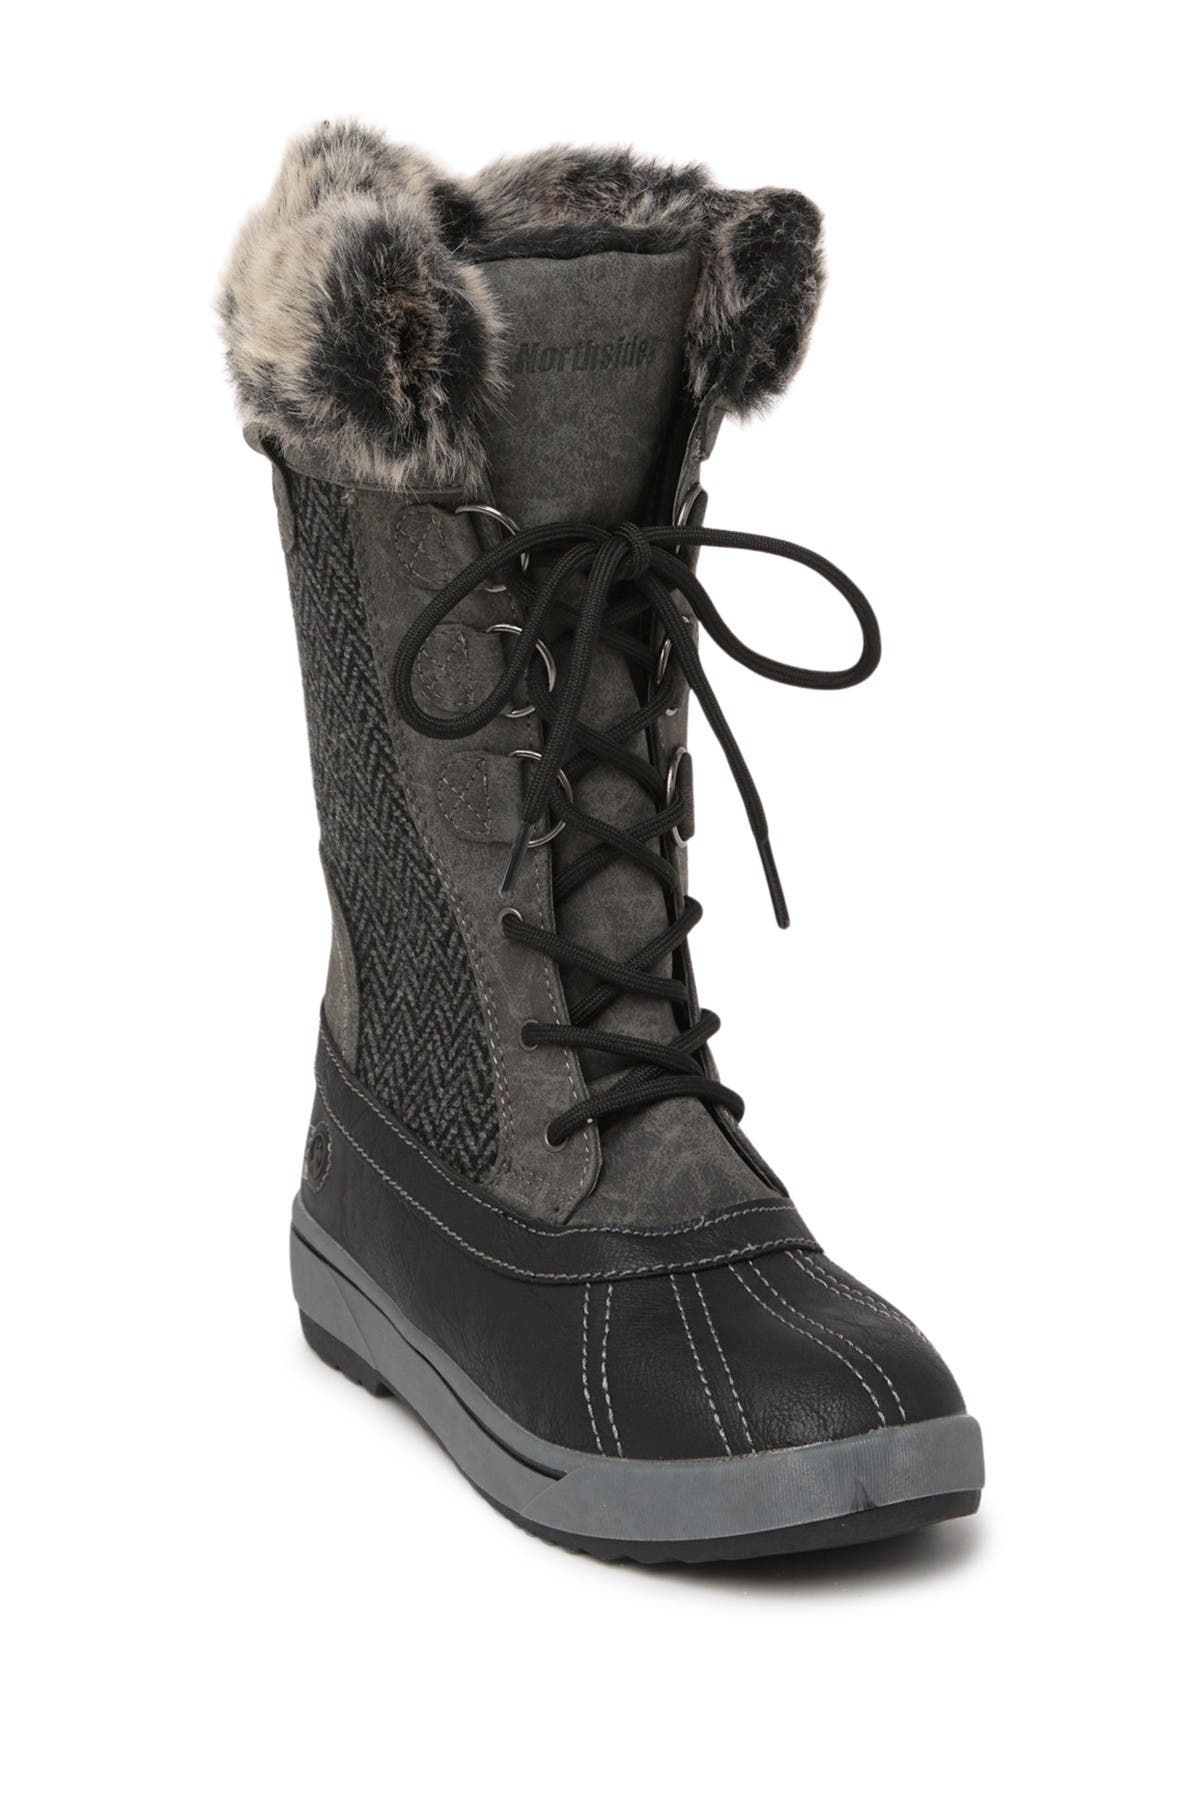 northside bishop faux fur lined boot